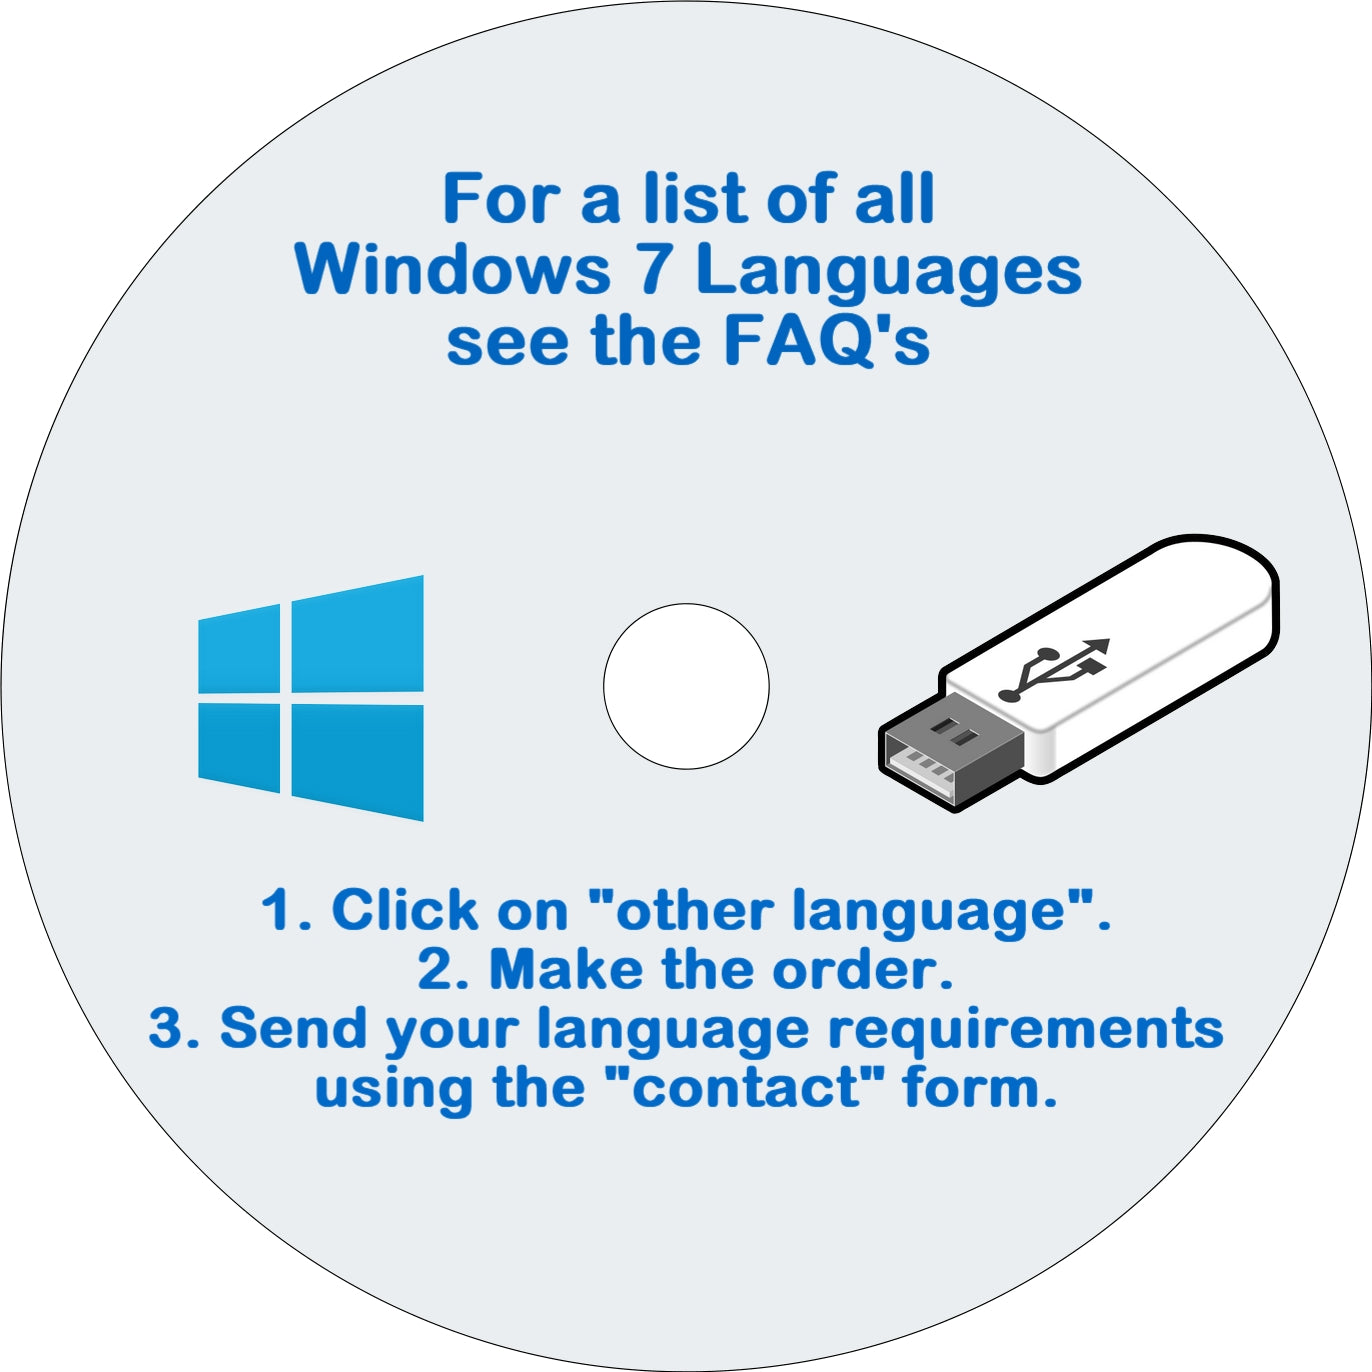 Windows 7 All Versions Disk + USB 32 Bit+64 Bit